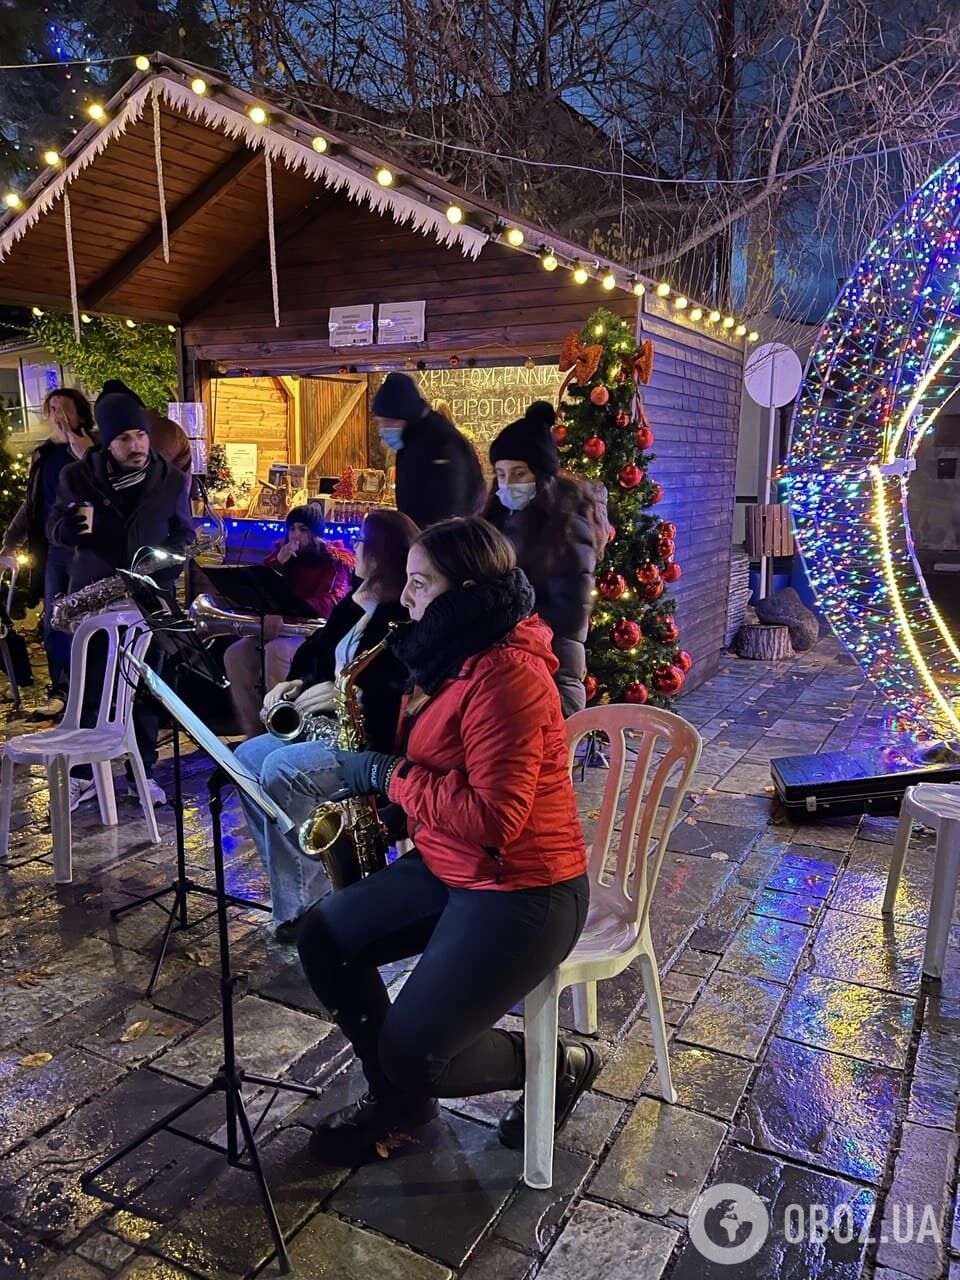 Праздничный оркестр на площади в деревне Киперунта